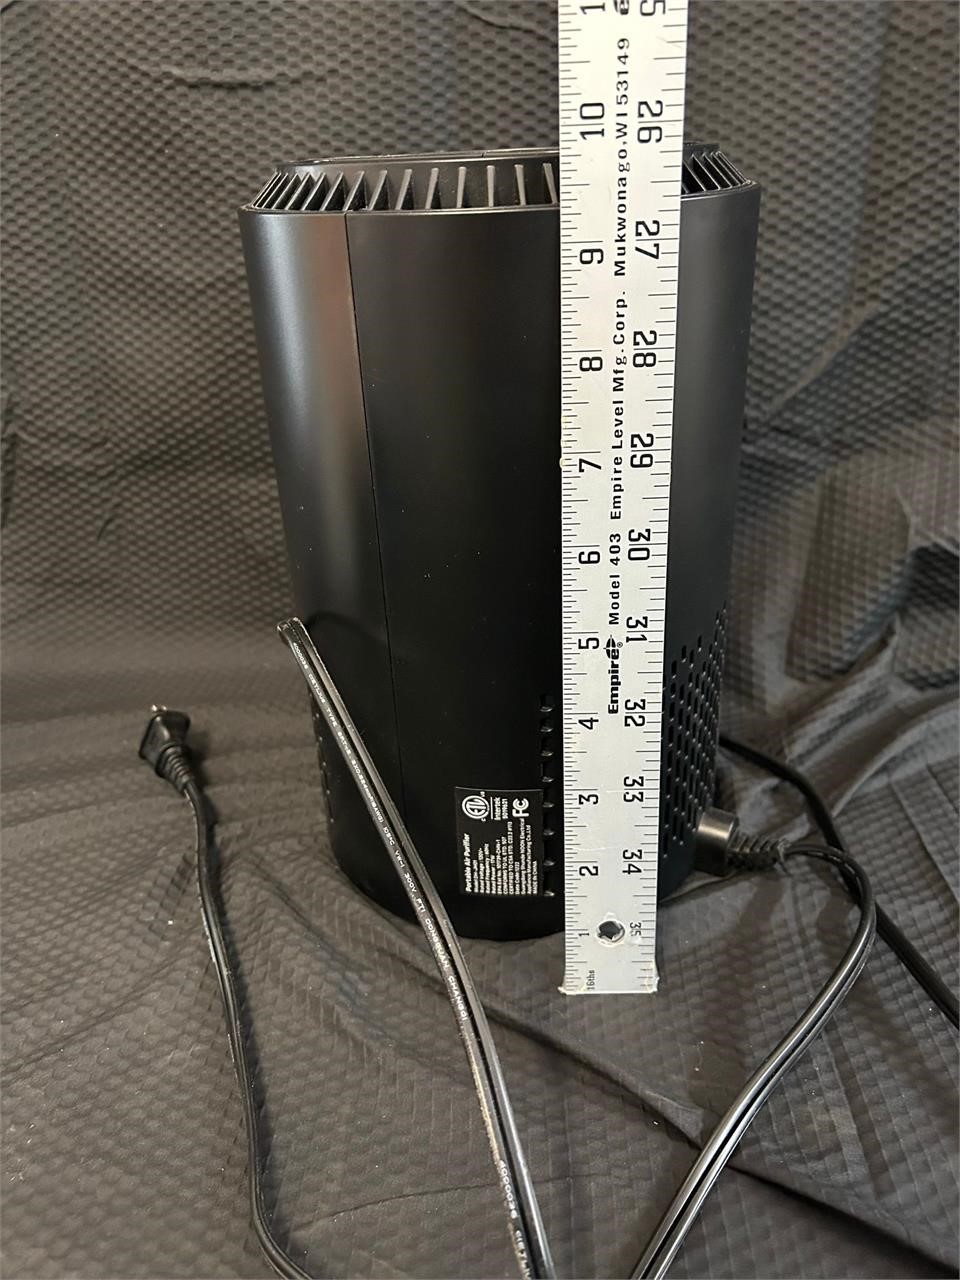 Portable Air Purifier